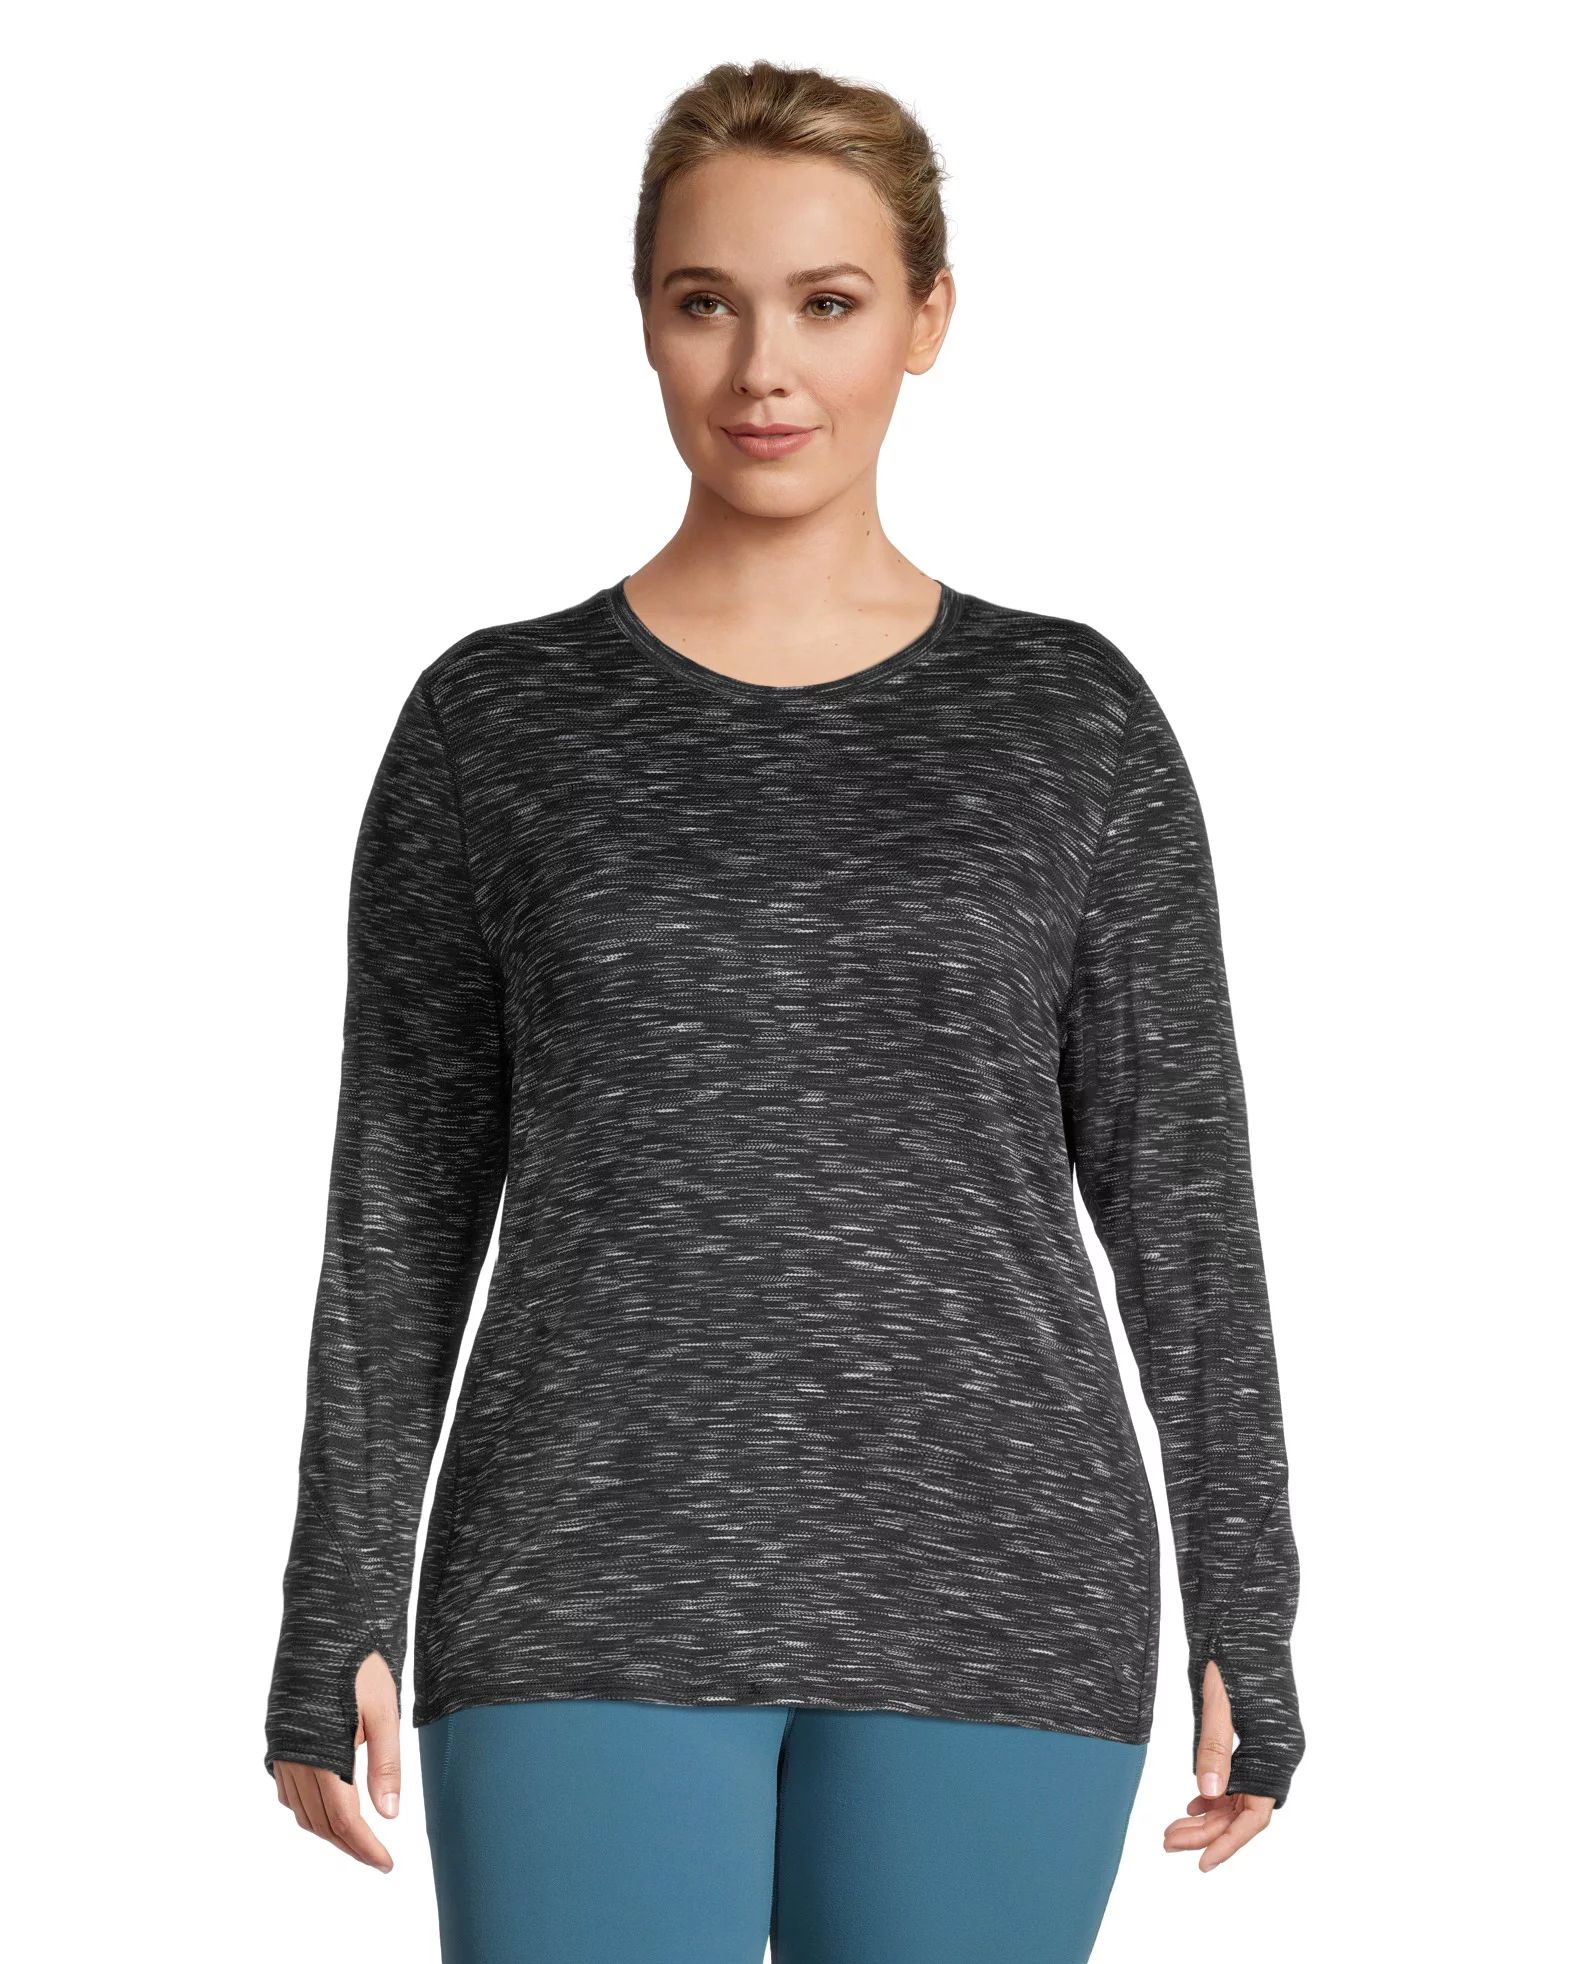 L. SS T-SHIRT TECH BE ONE Running T-shirt - Women - Diadora Online Store US